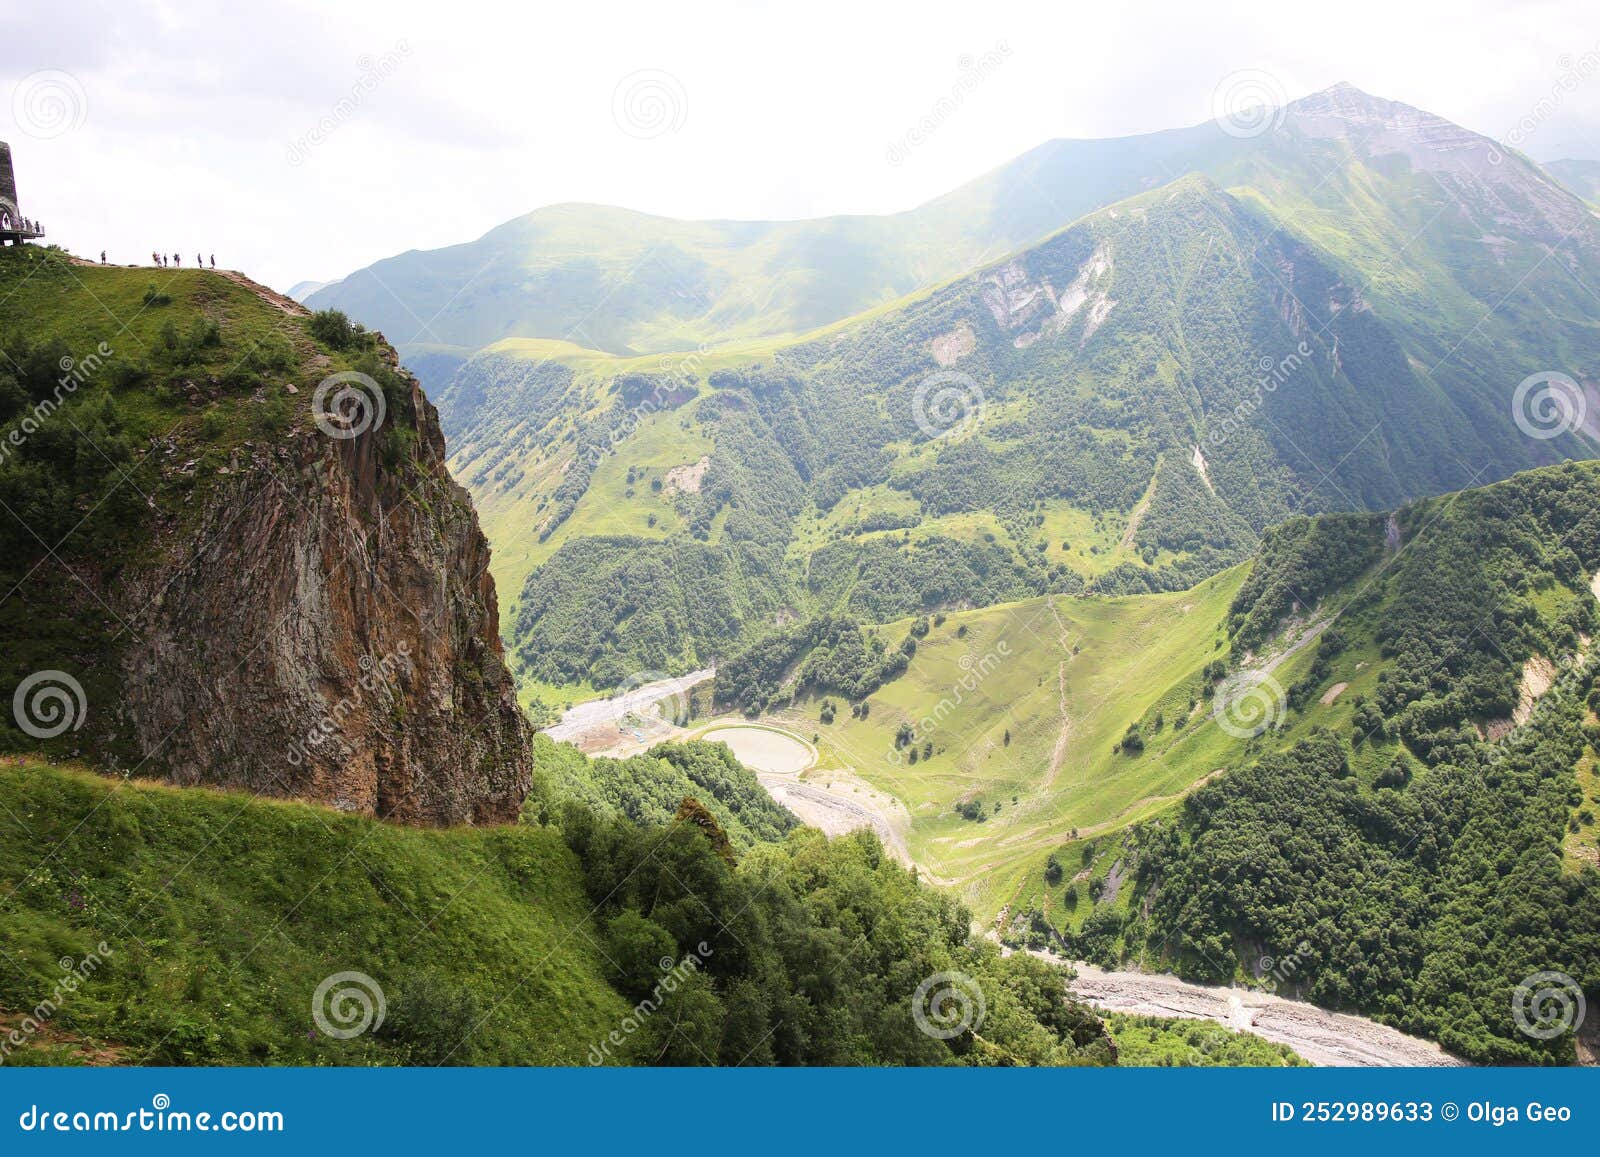 beautiful picturesque mountain landscape georgia